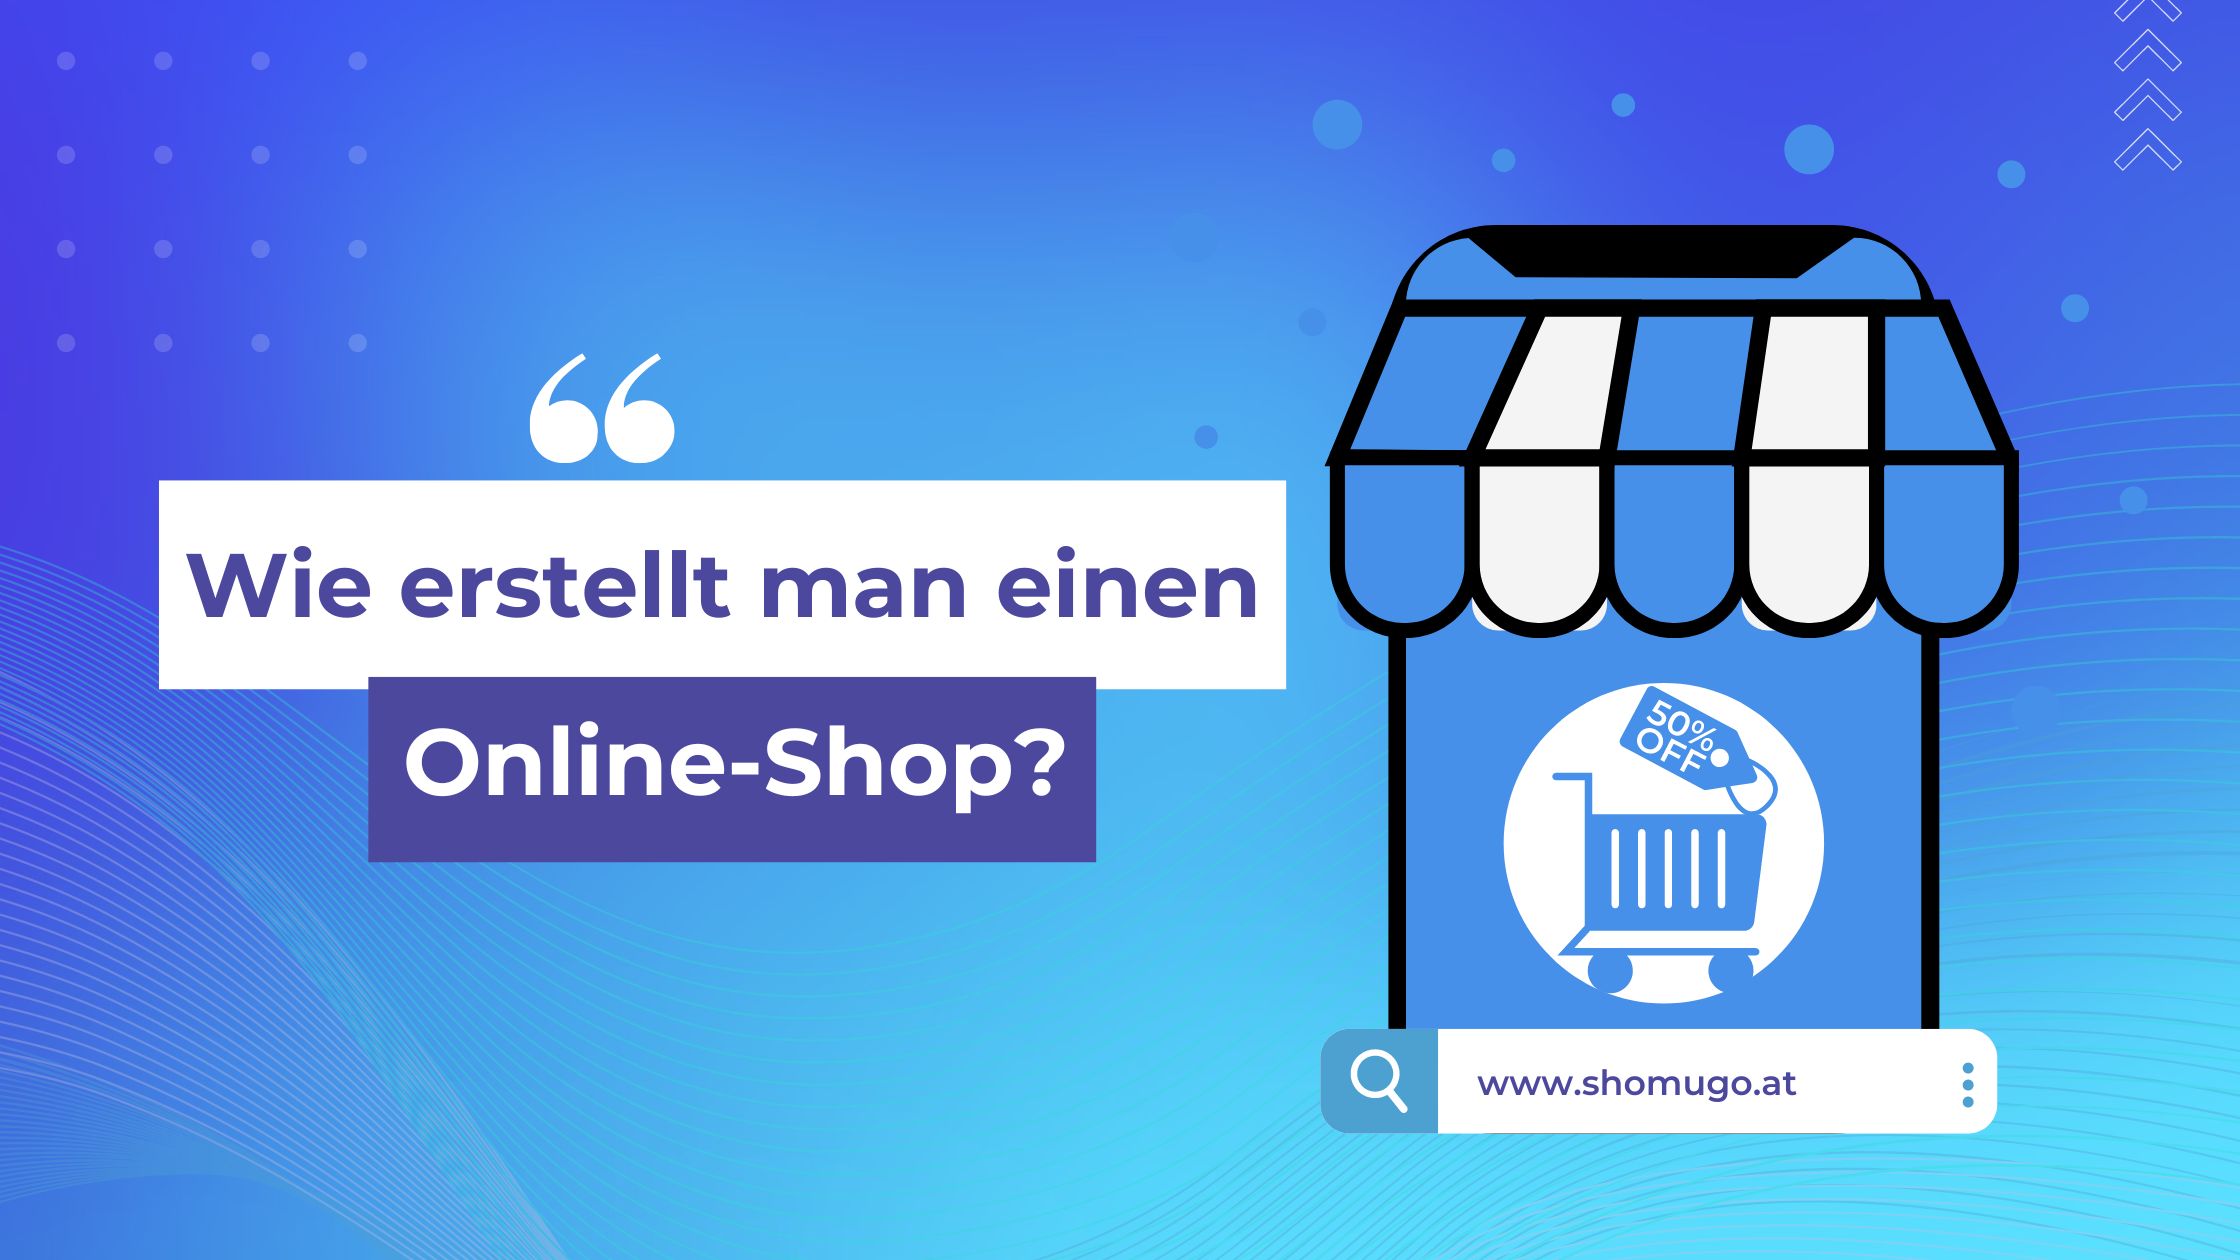 SHOMUGO - Wie erstellt man einen Online Shop